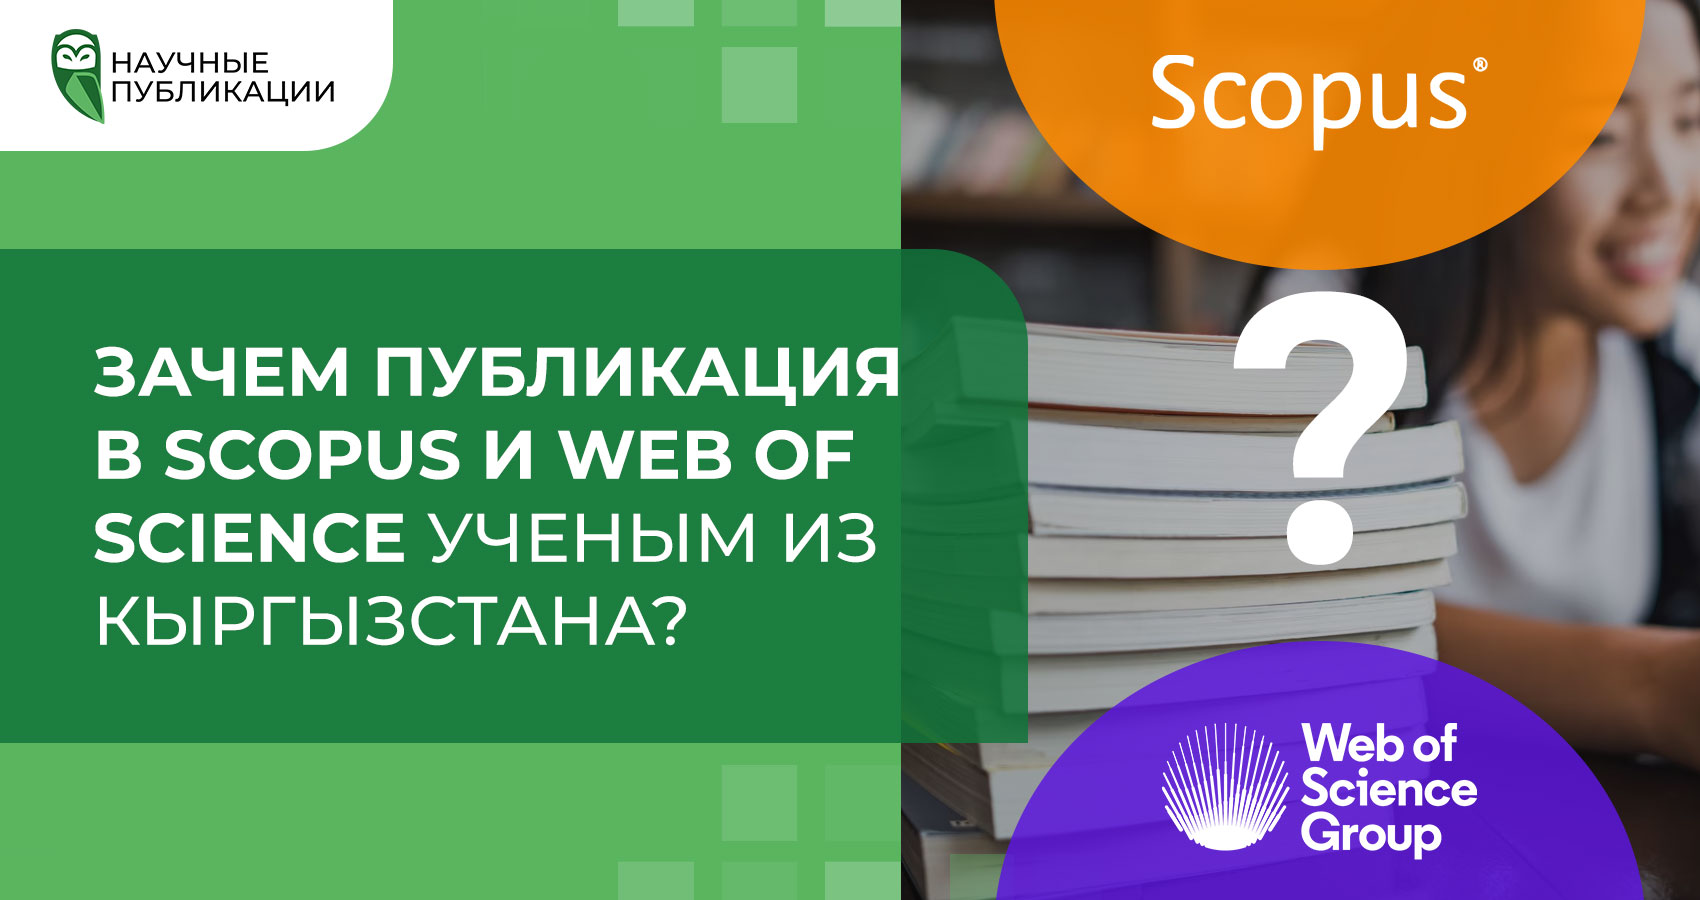 Зачем публикация в Scopus и Web of Science ученым из Кыргызстана?